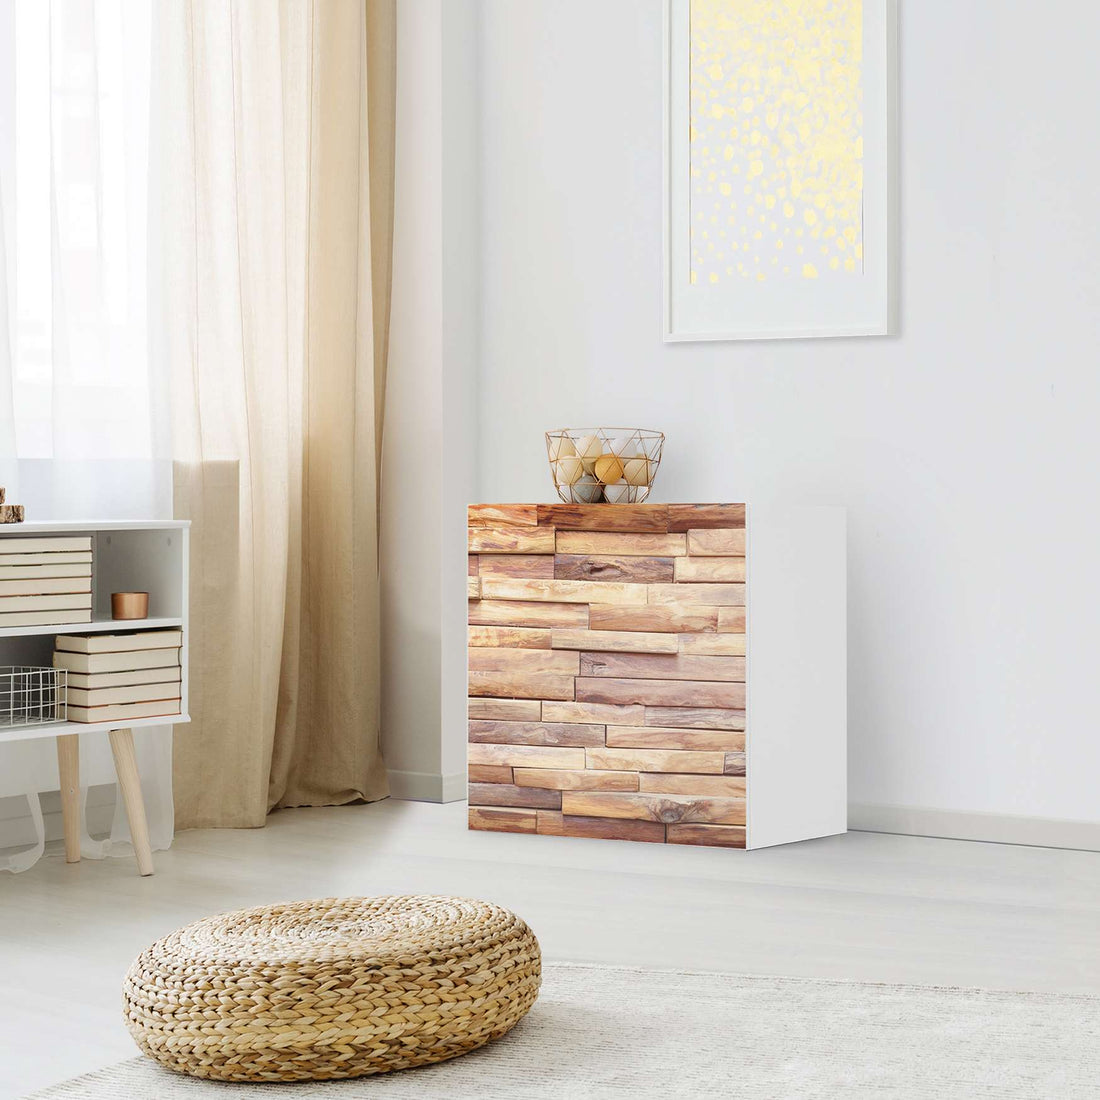 Klebefolie für Möbel Artwood - IKEA Besta Regal 1 Türe - Wohnzimmer